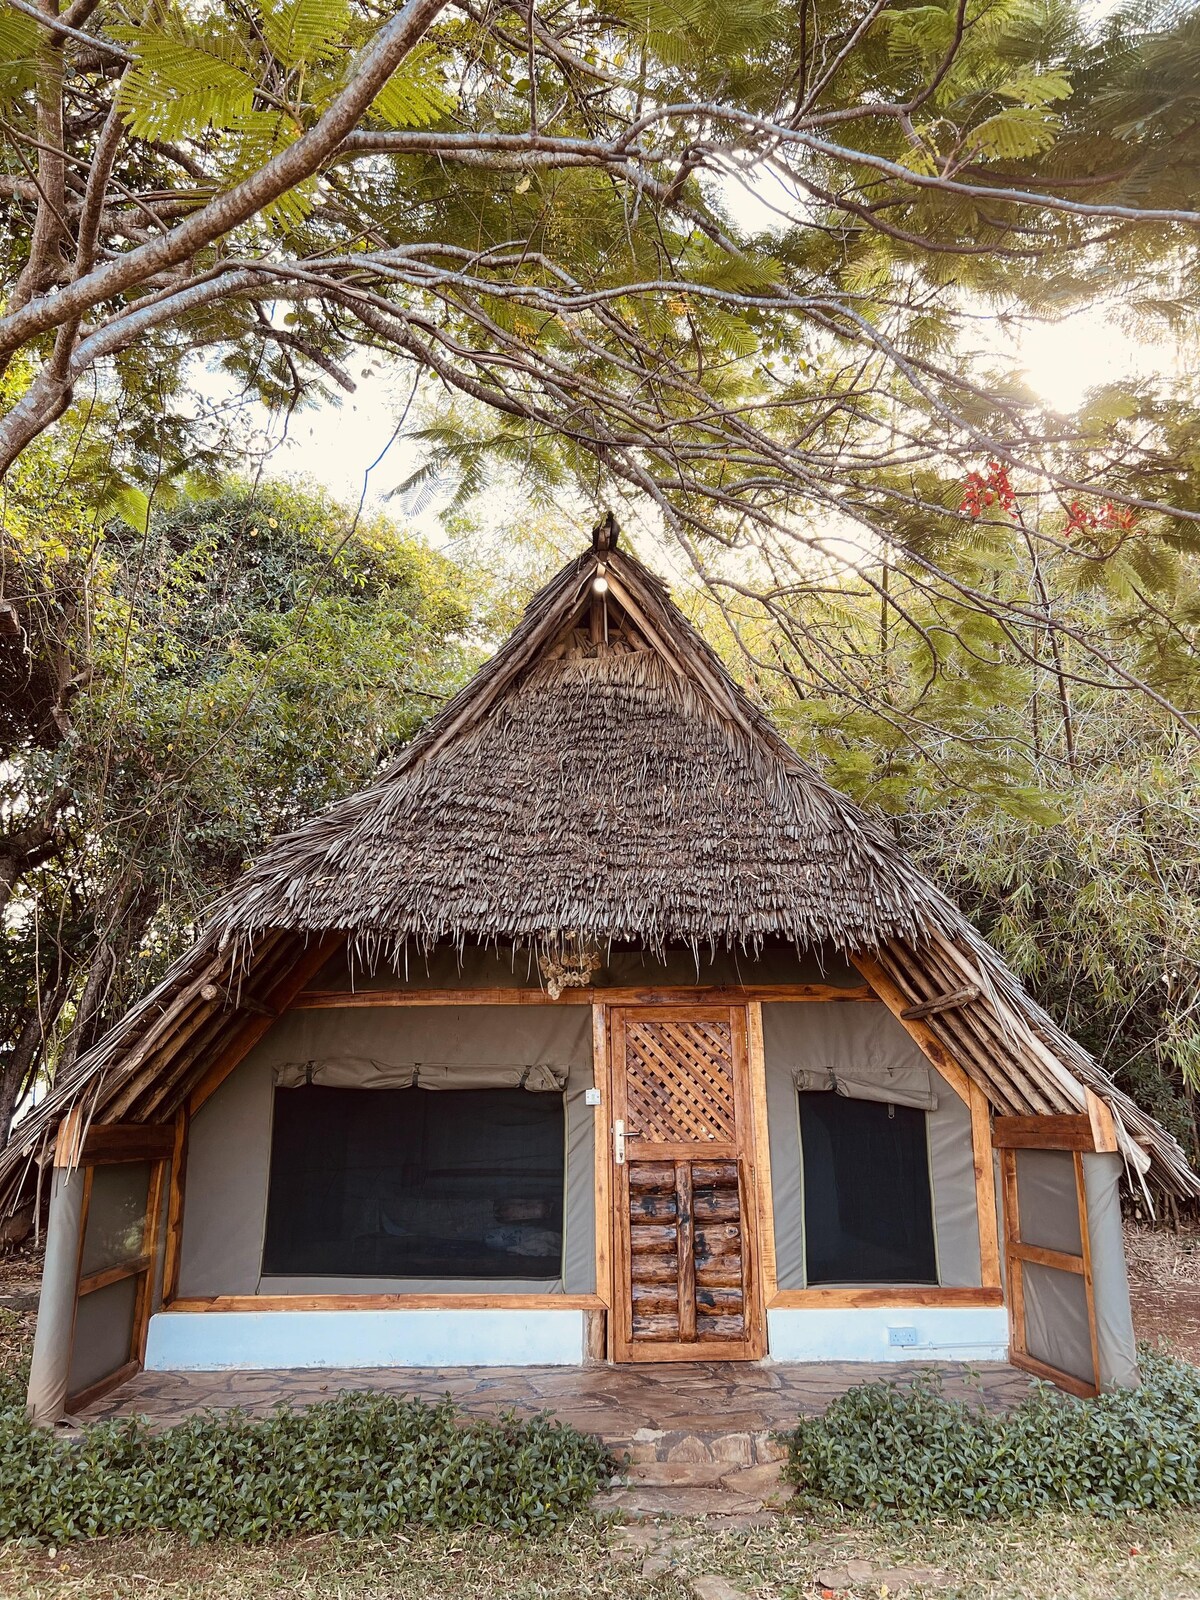 Mwambani行政帐篷小木屋